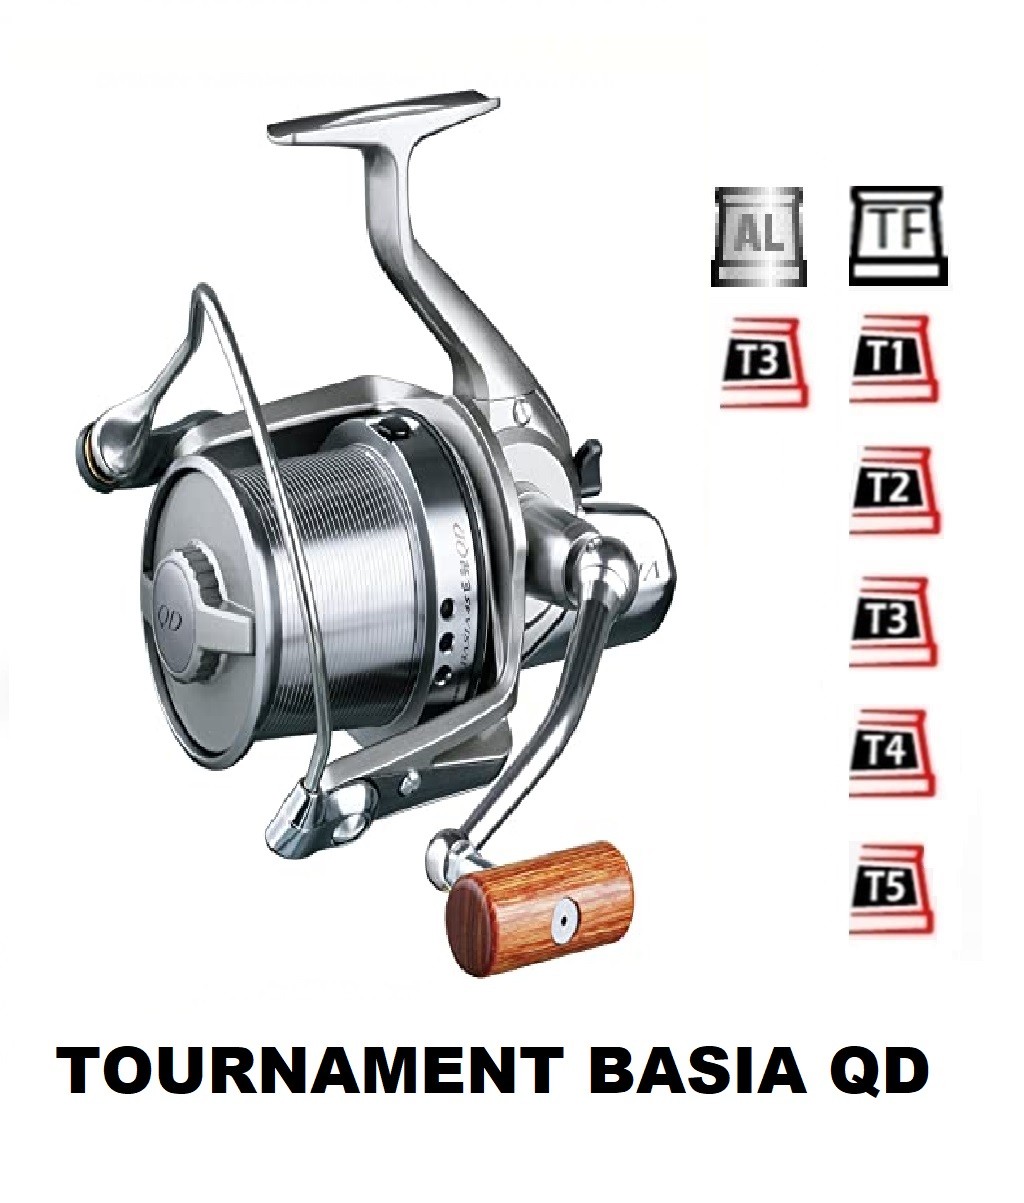 Bobinas Tournament Basia Qd